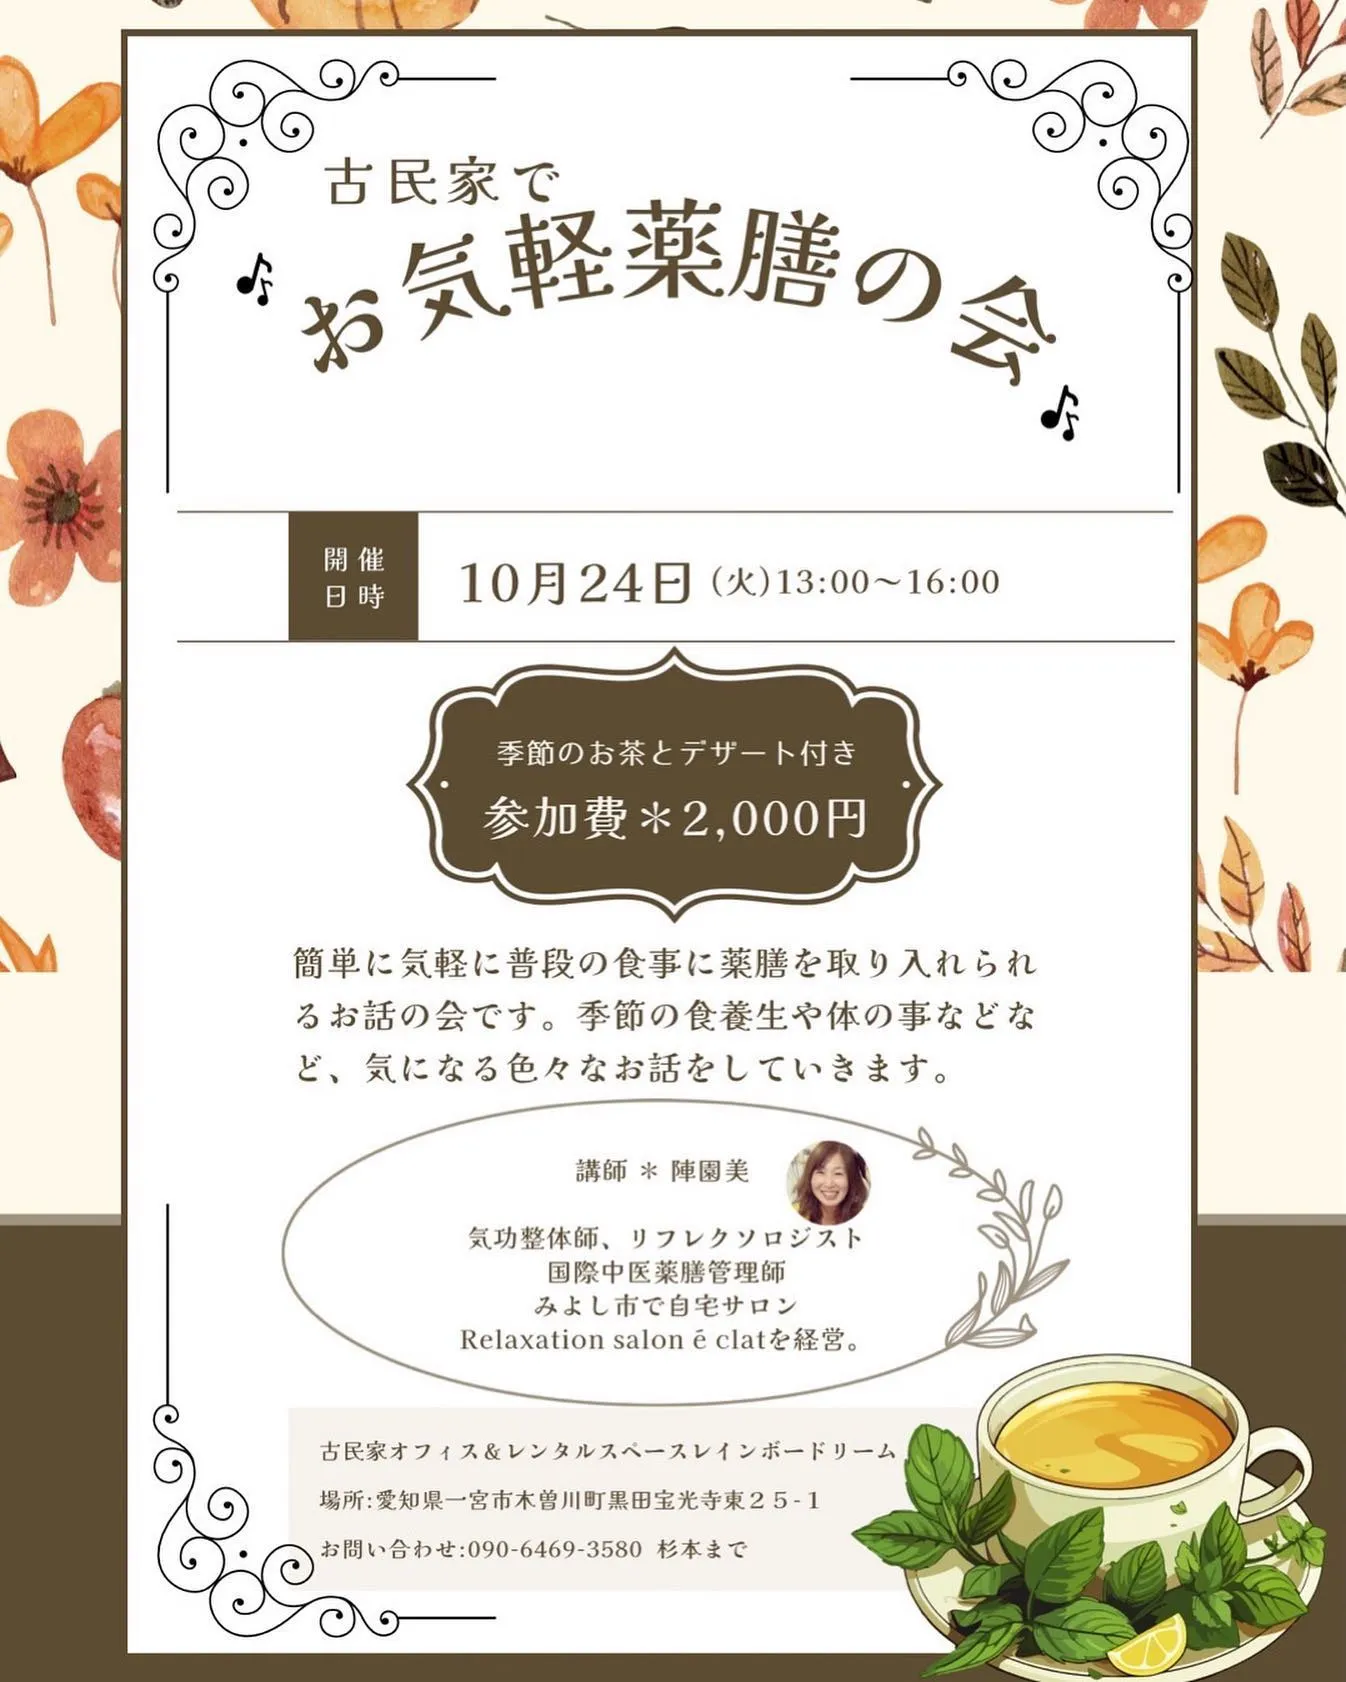 10月24日(火)13:00〜16:00